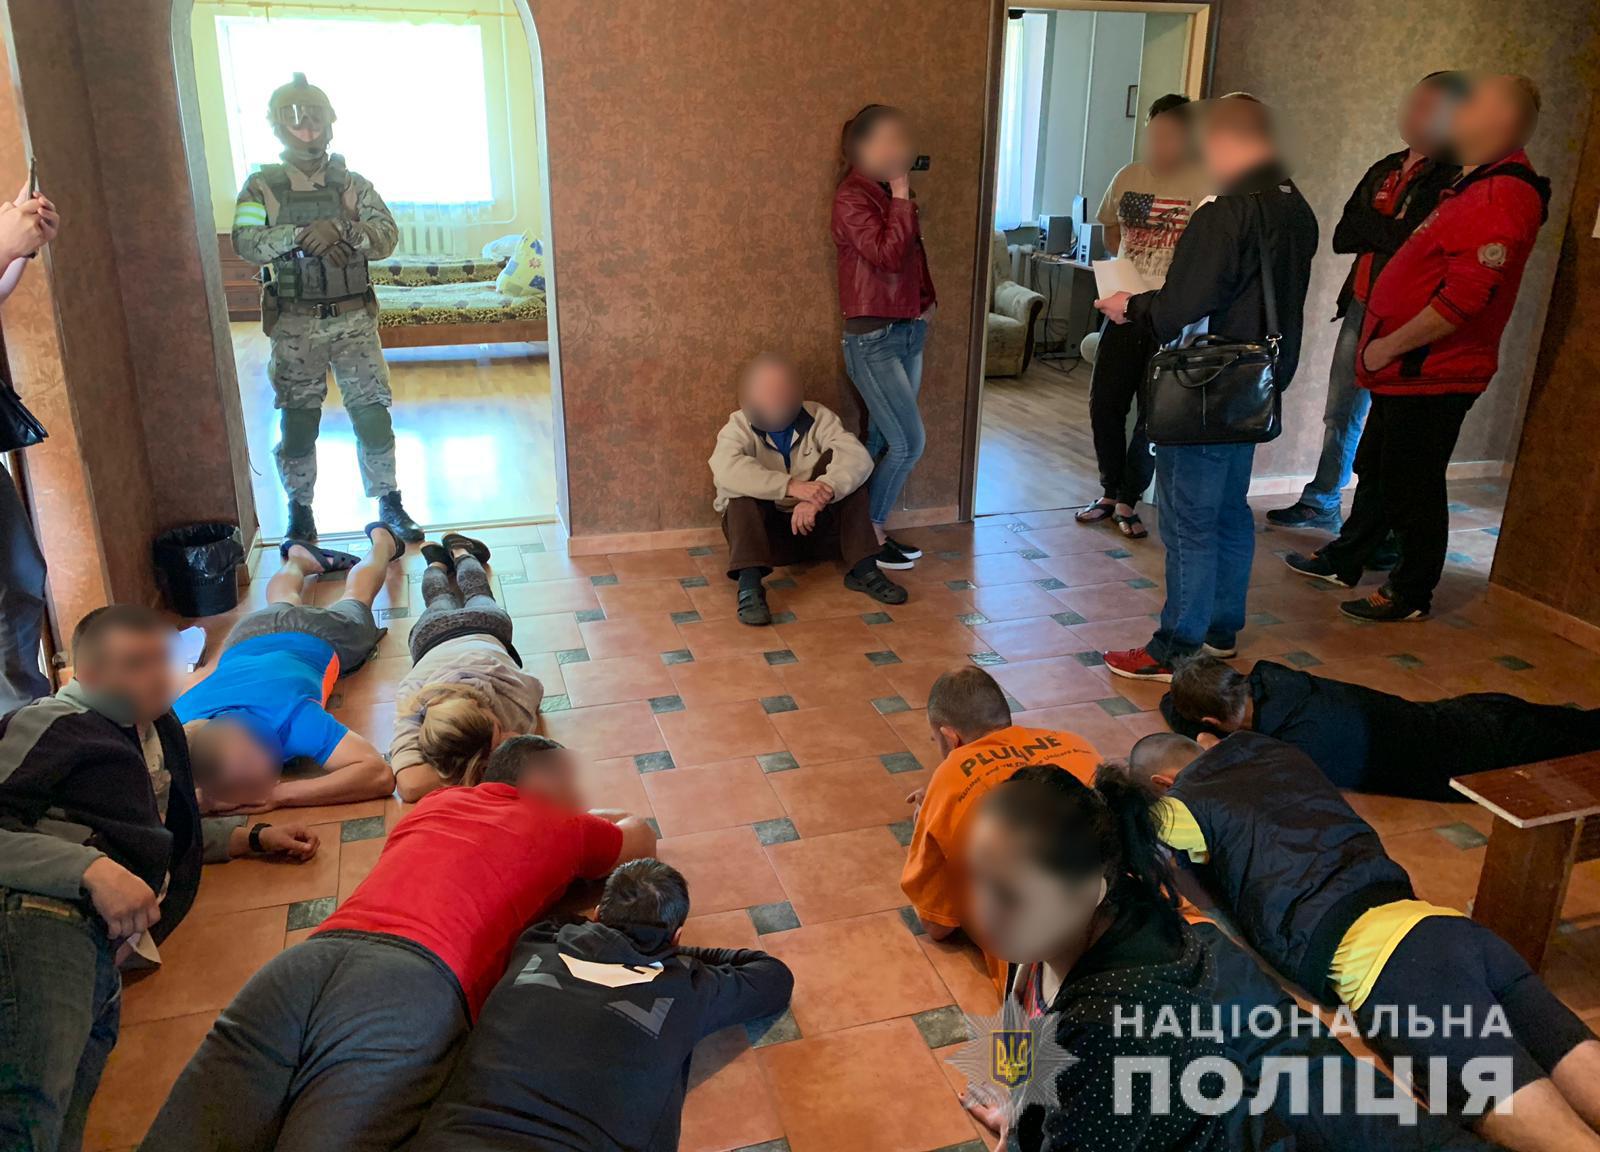 Под Харьковом прикрыли стационар по лечению насилием (фото)